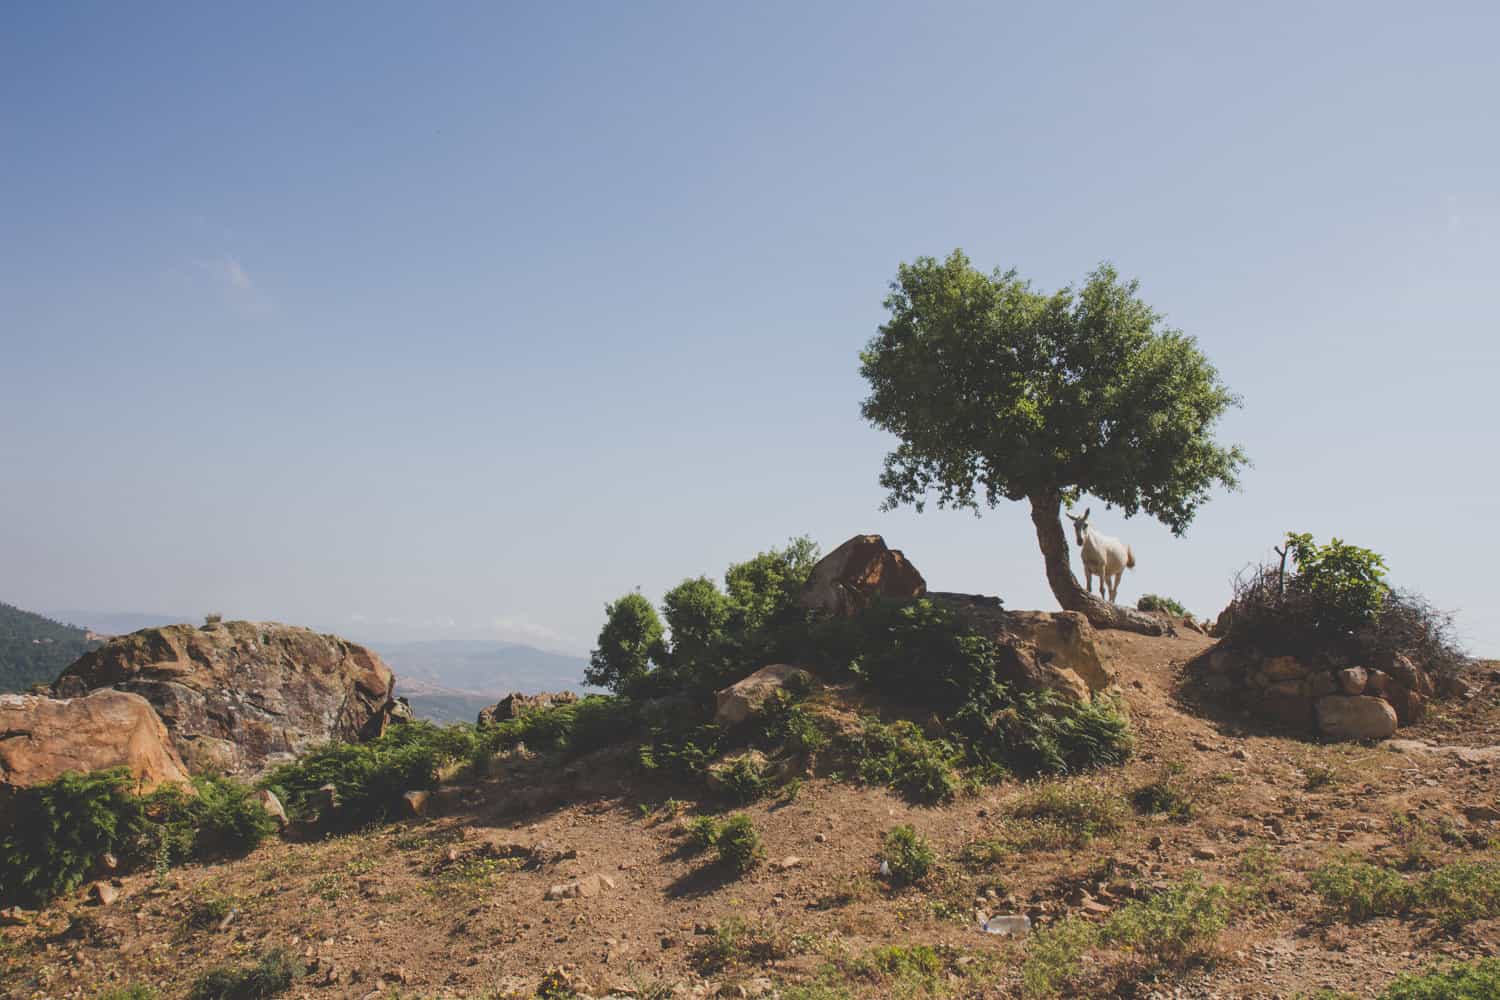 Ziege auf einem Berggipfel neben einem Baum in Marokko